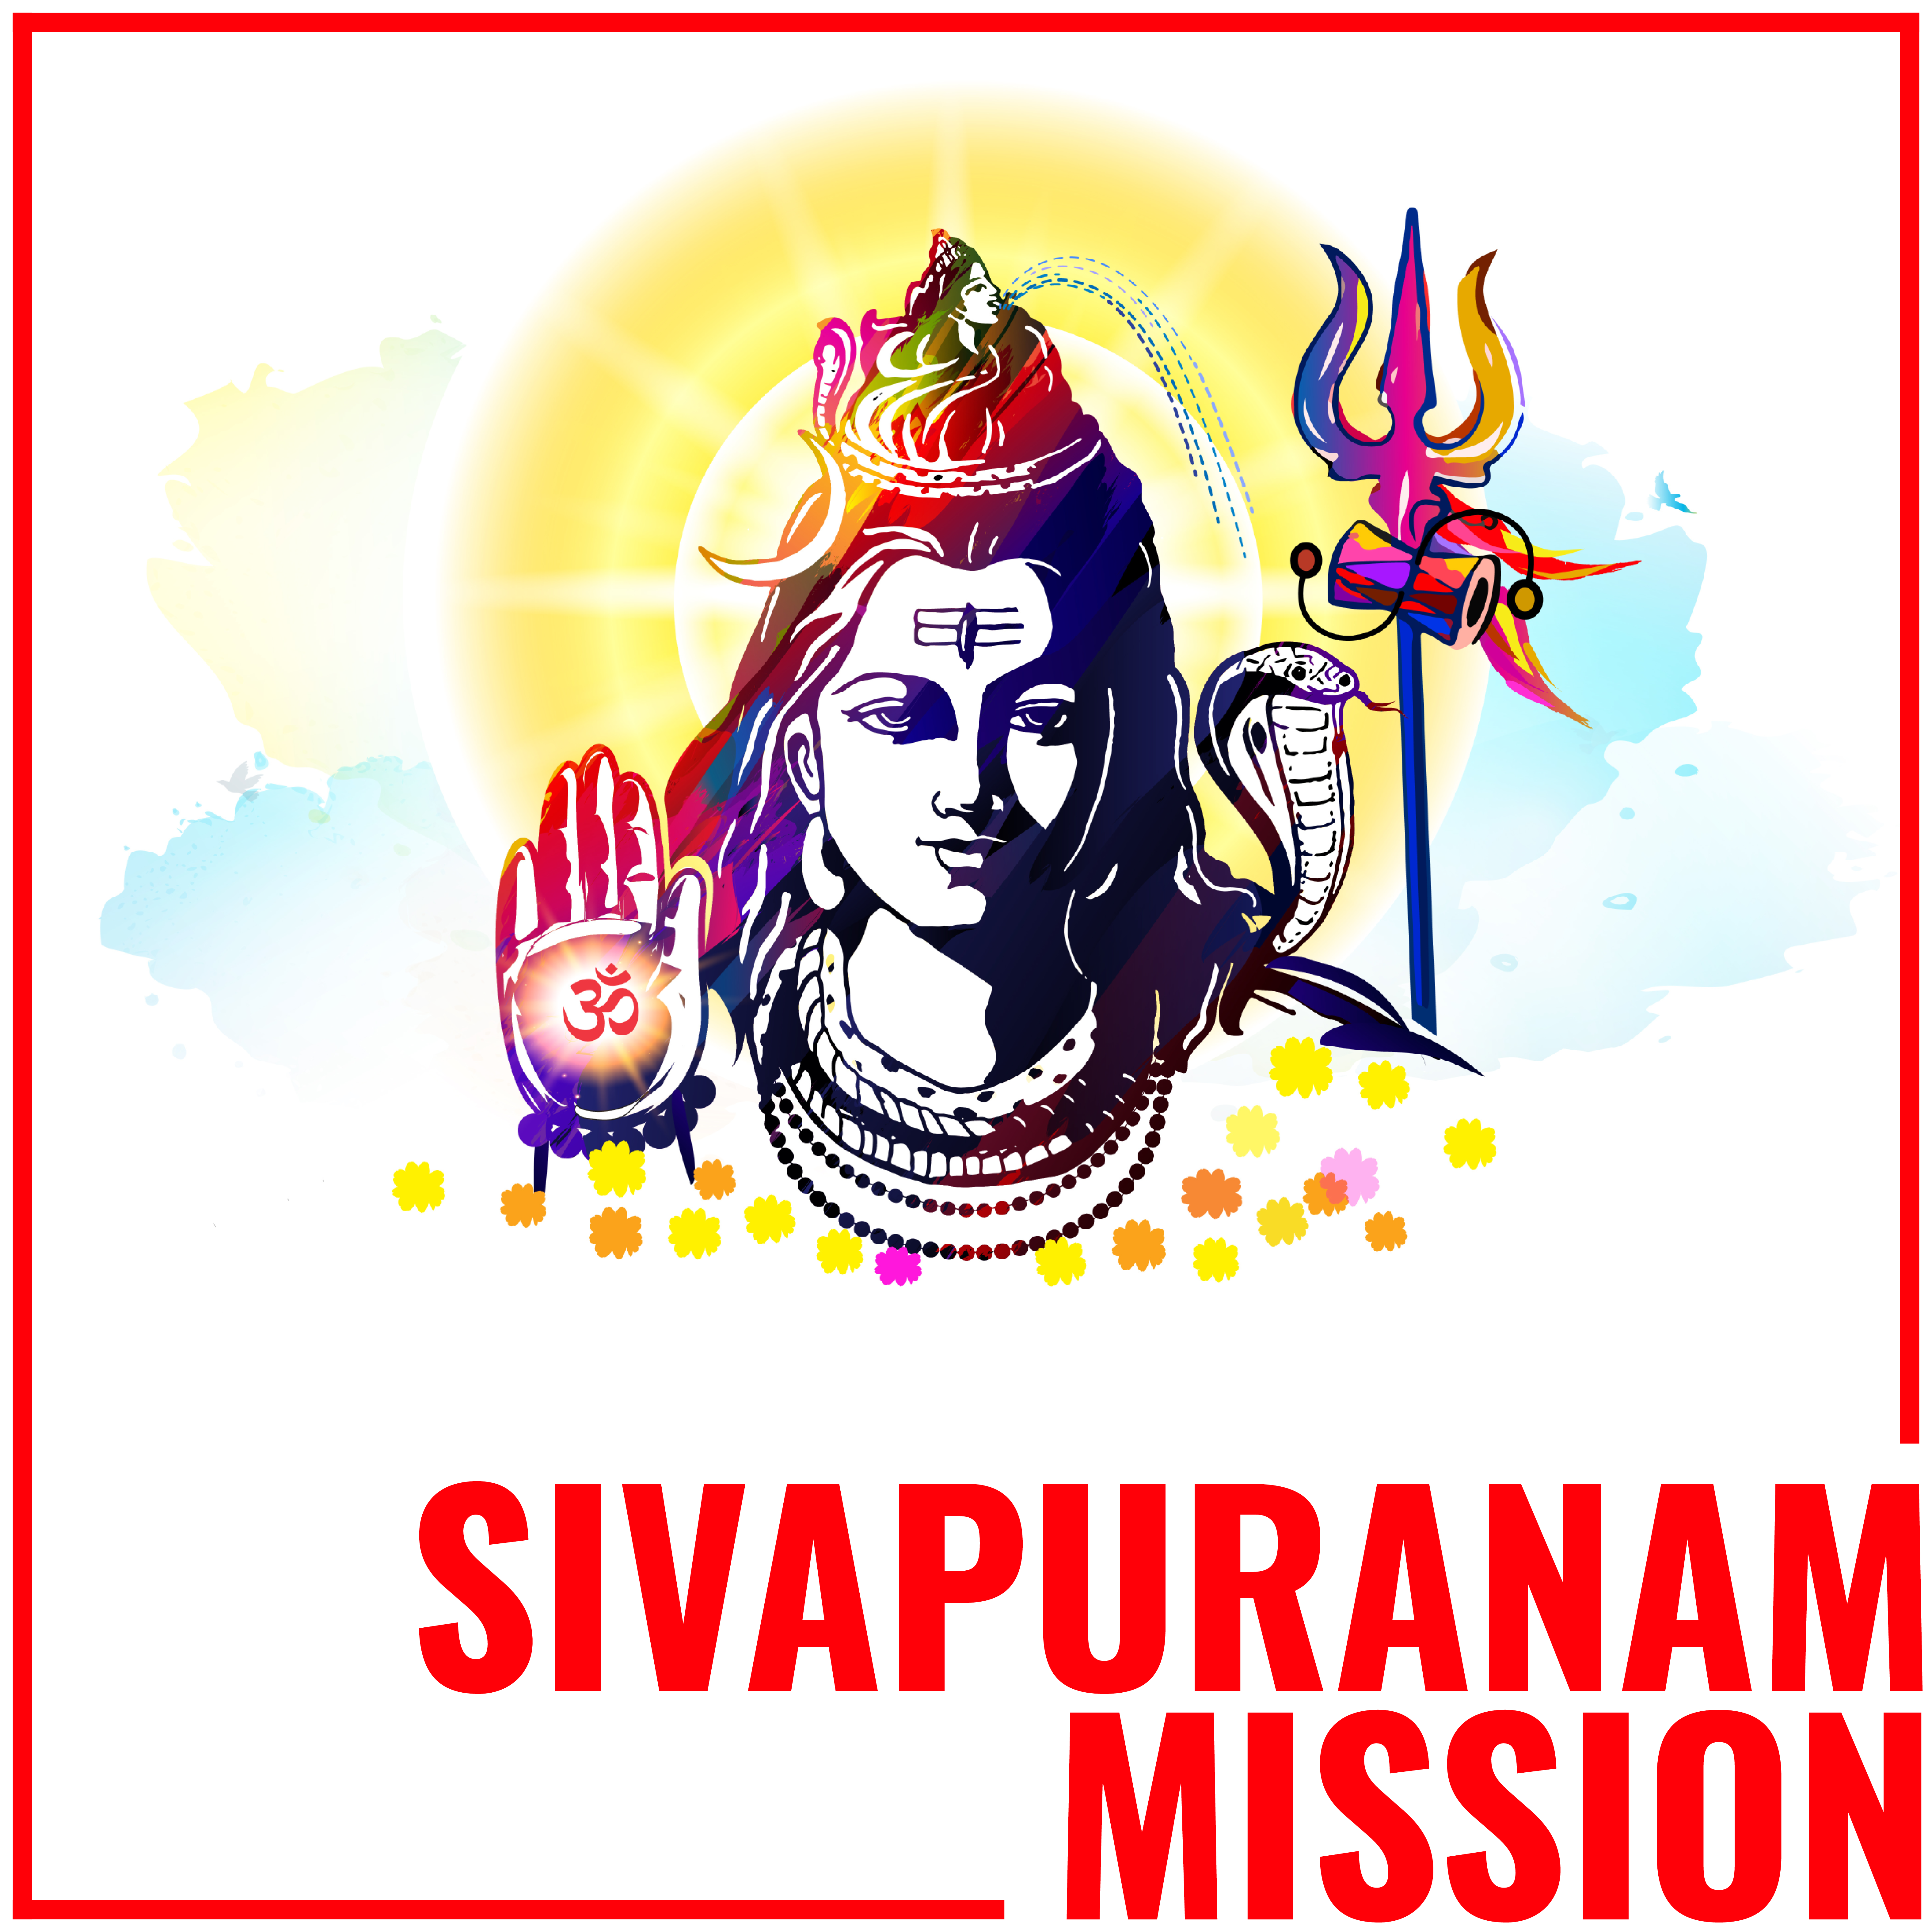 Sivapuranam Mission